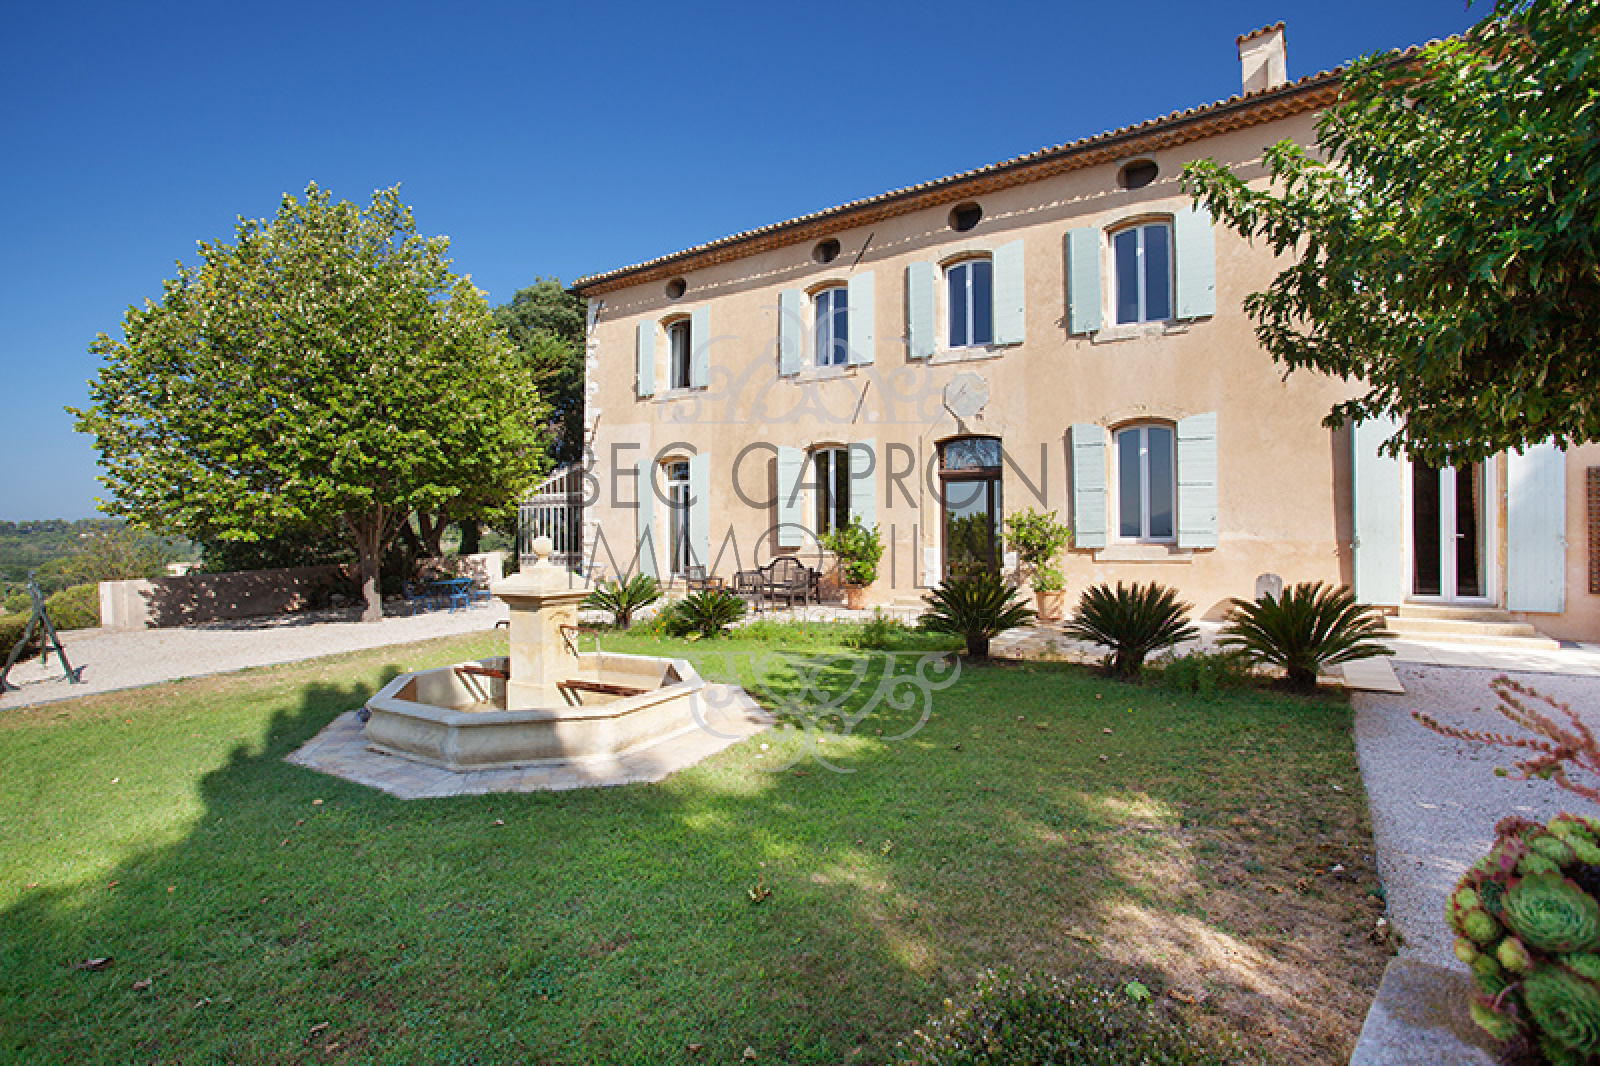 Image_5, Maisons (maison, propriÃ©tÃ©, villa, Mas,bastide, maison de village), Aix-en-Provence, ref :975 VM